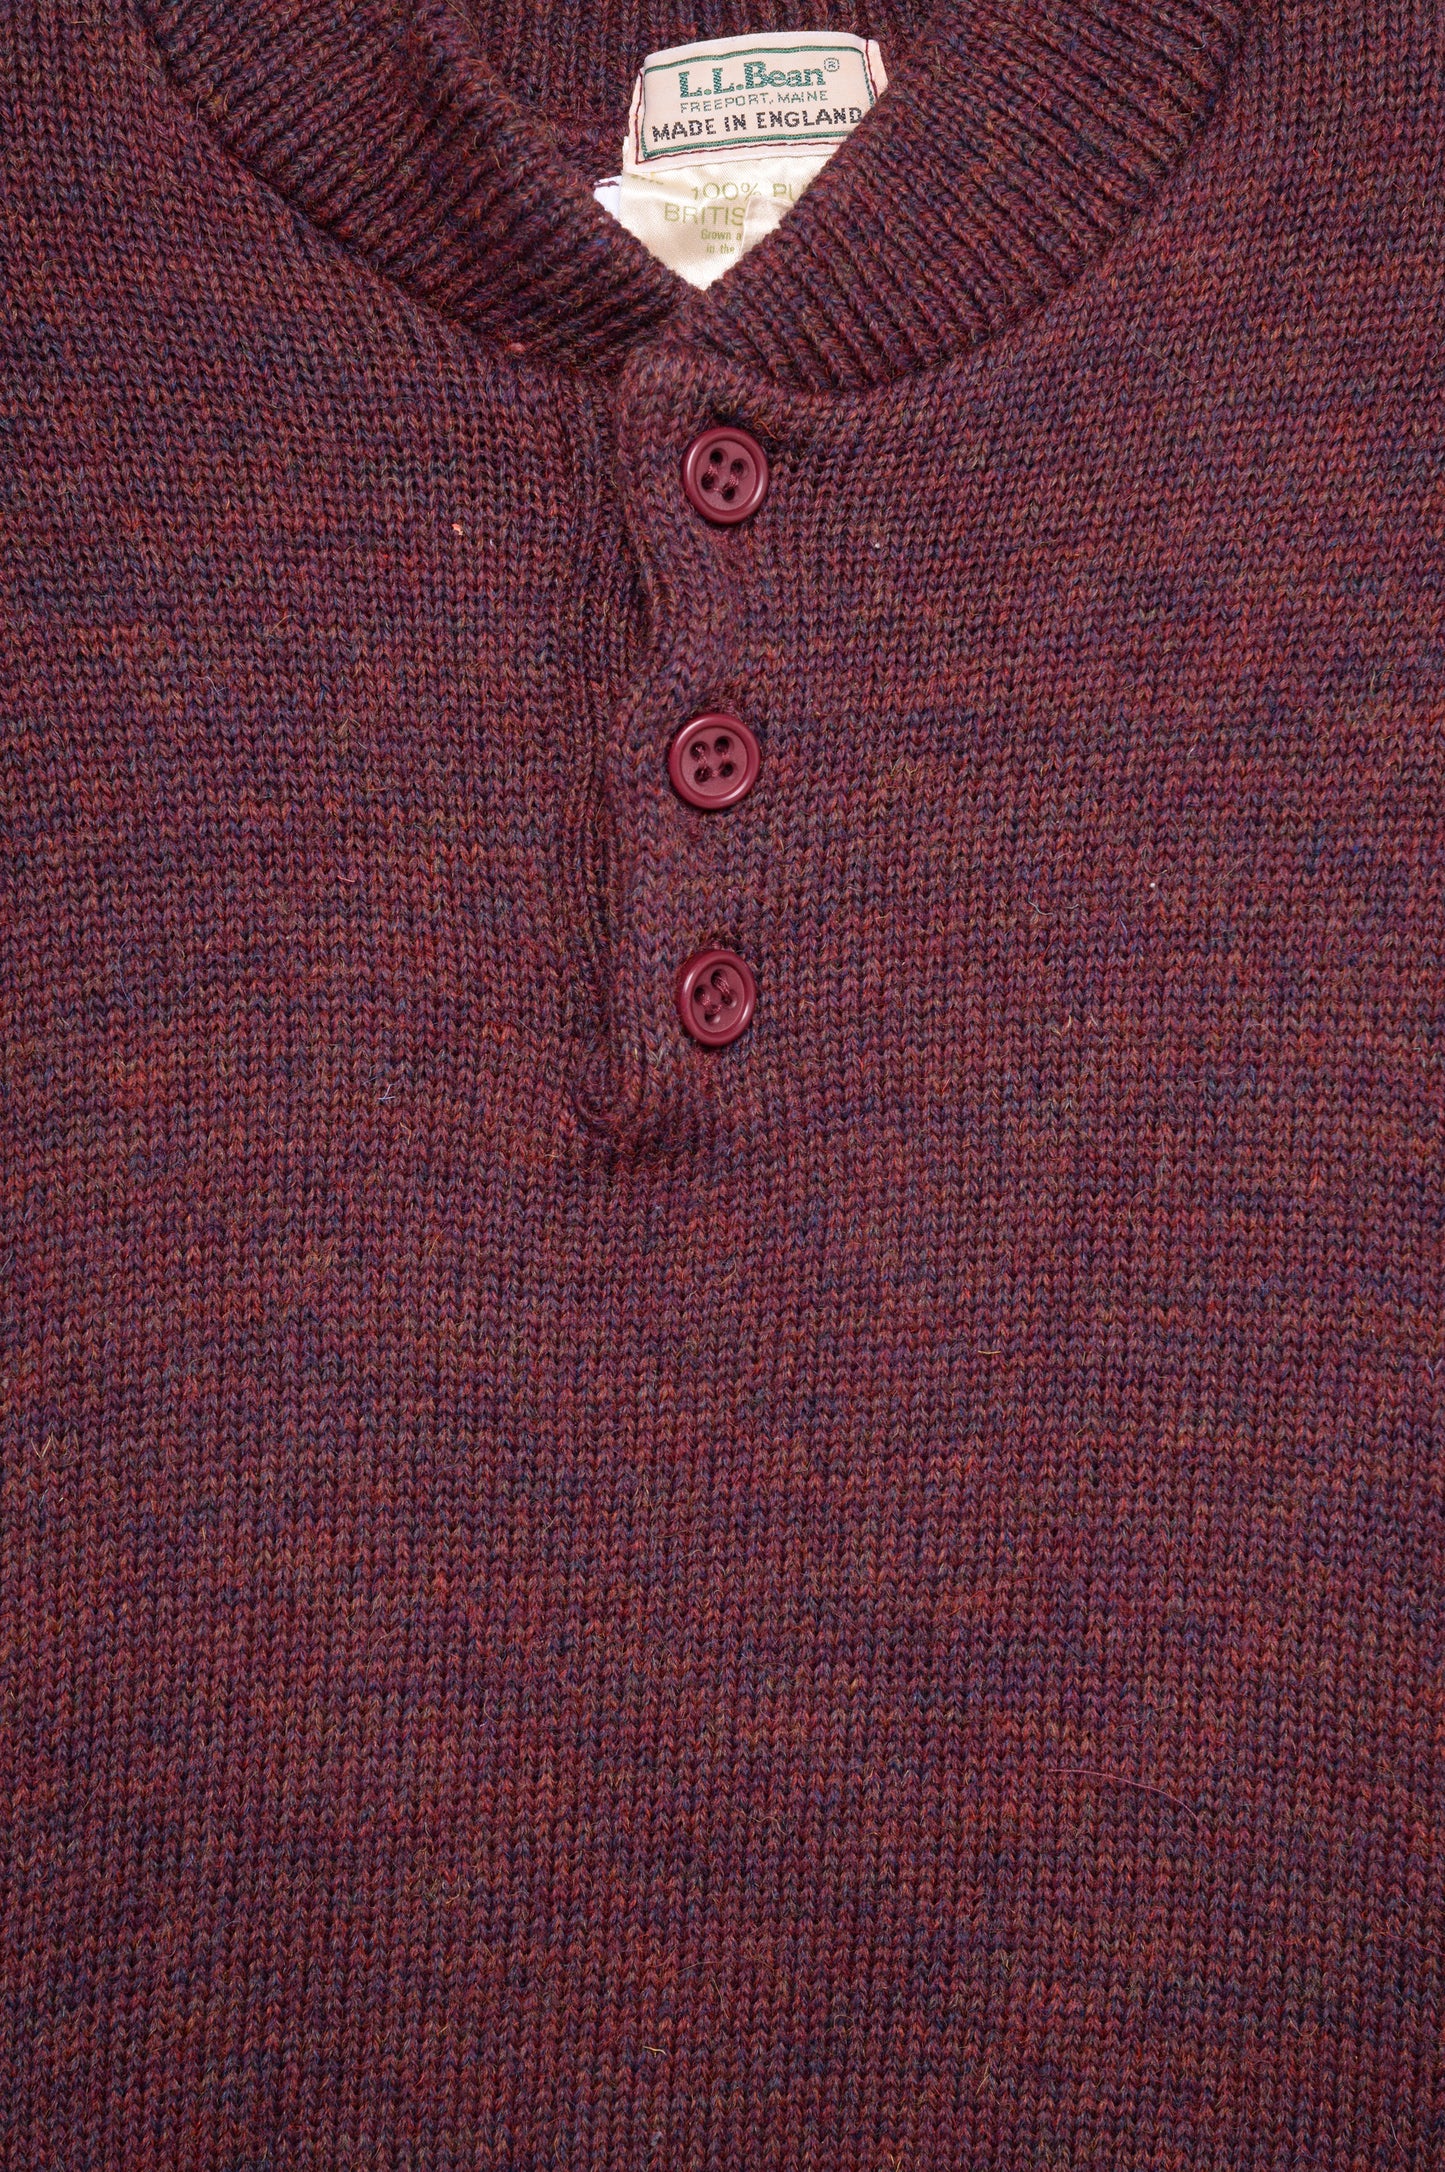 1980s Marled Burgundy Wool Sweater